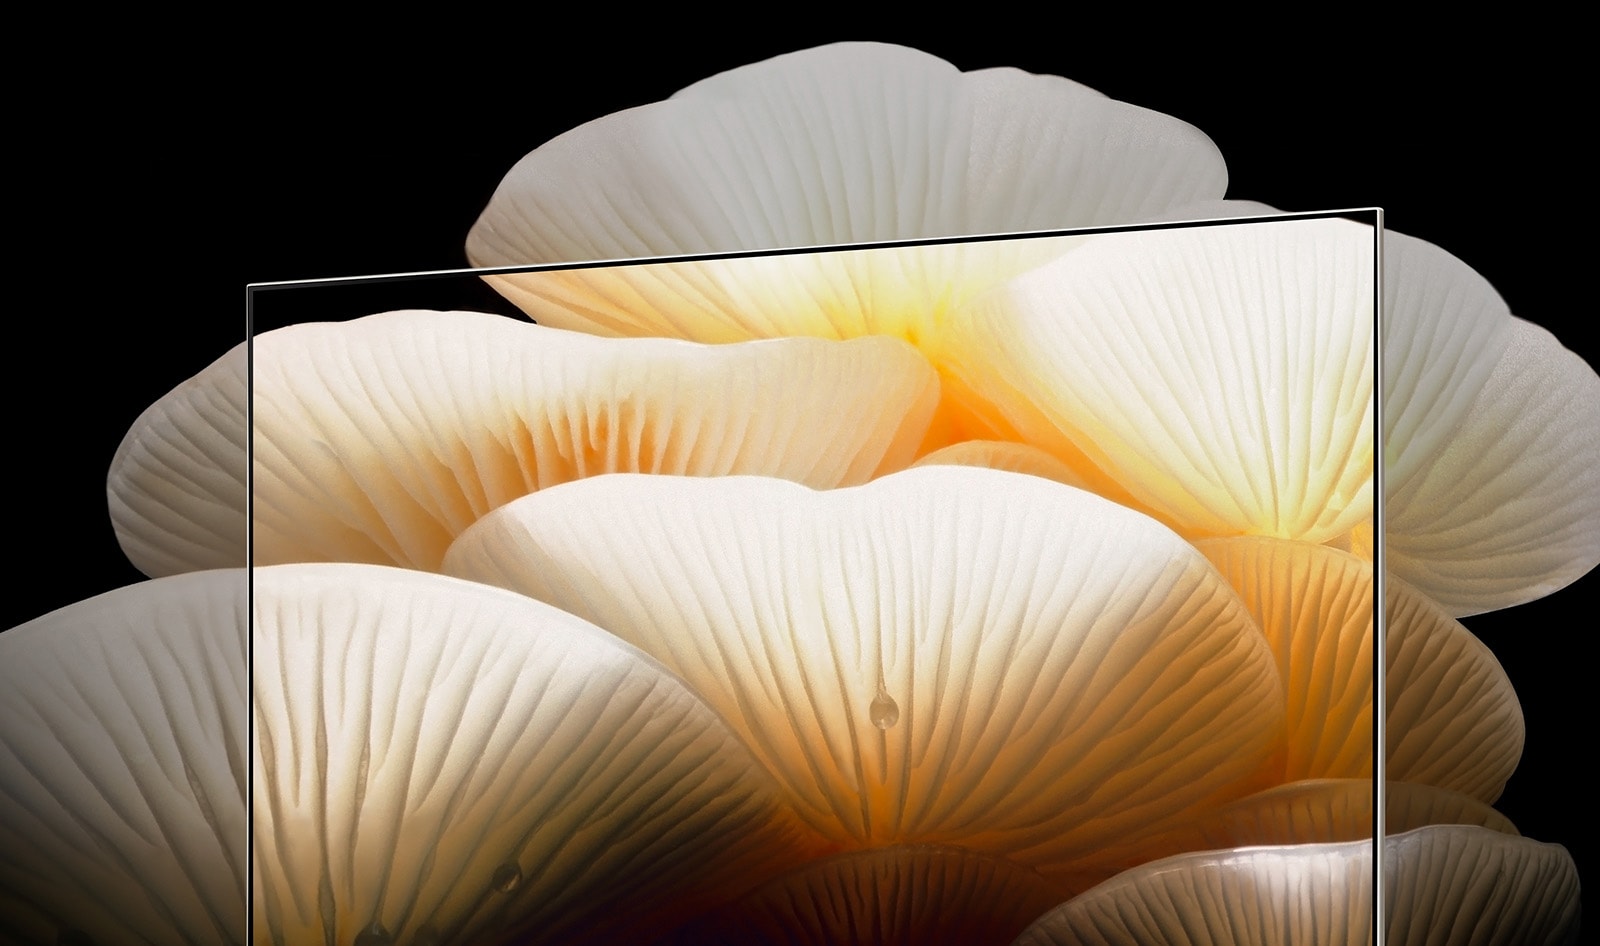 LG OLED Posé hiển thị hình ảnh những cây nấm trắng tươi sáng, trong trẻo trải dài qua khung hình TV.